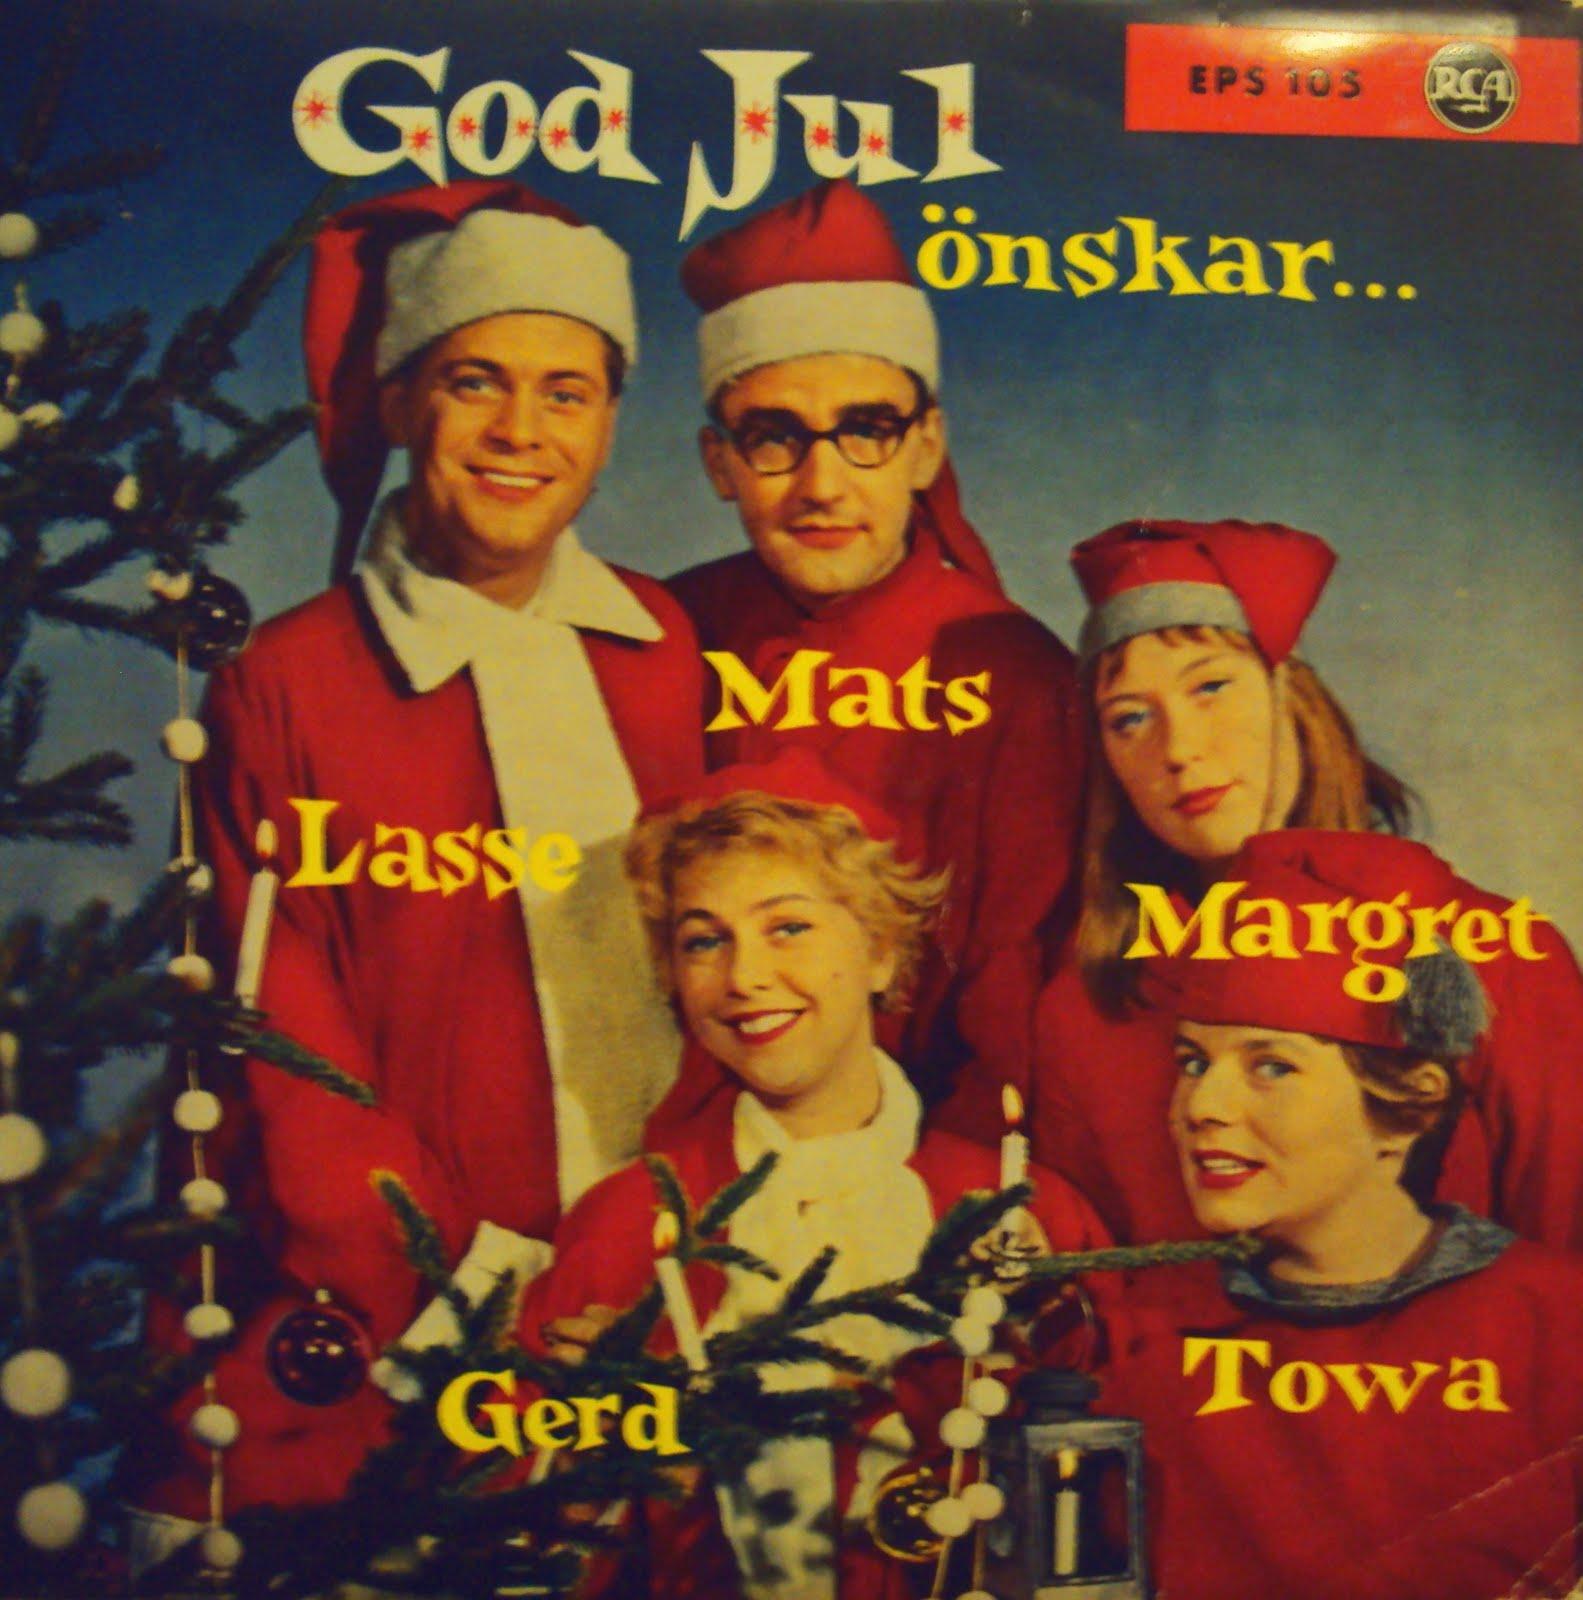 Legendarer från förr önskar god jul. Runt granen tindrar och sjunger Mats och Gerd Persson, Lasse Lönndahl, Towa Carsson och Margret Jonsson.